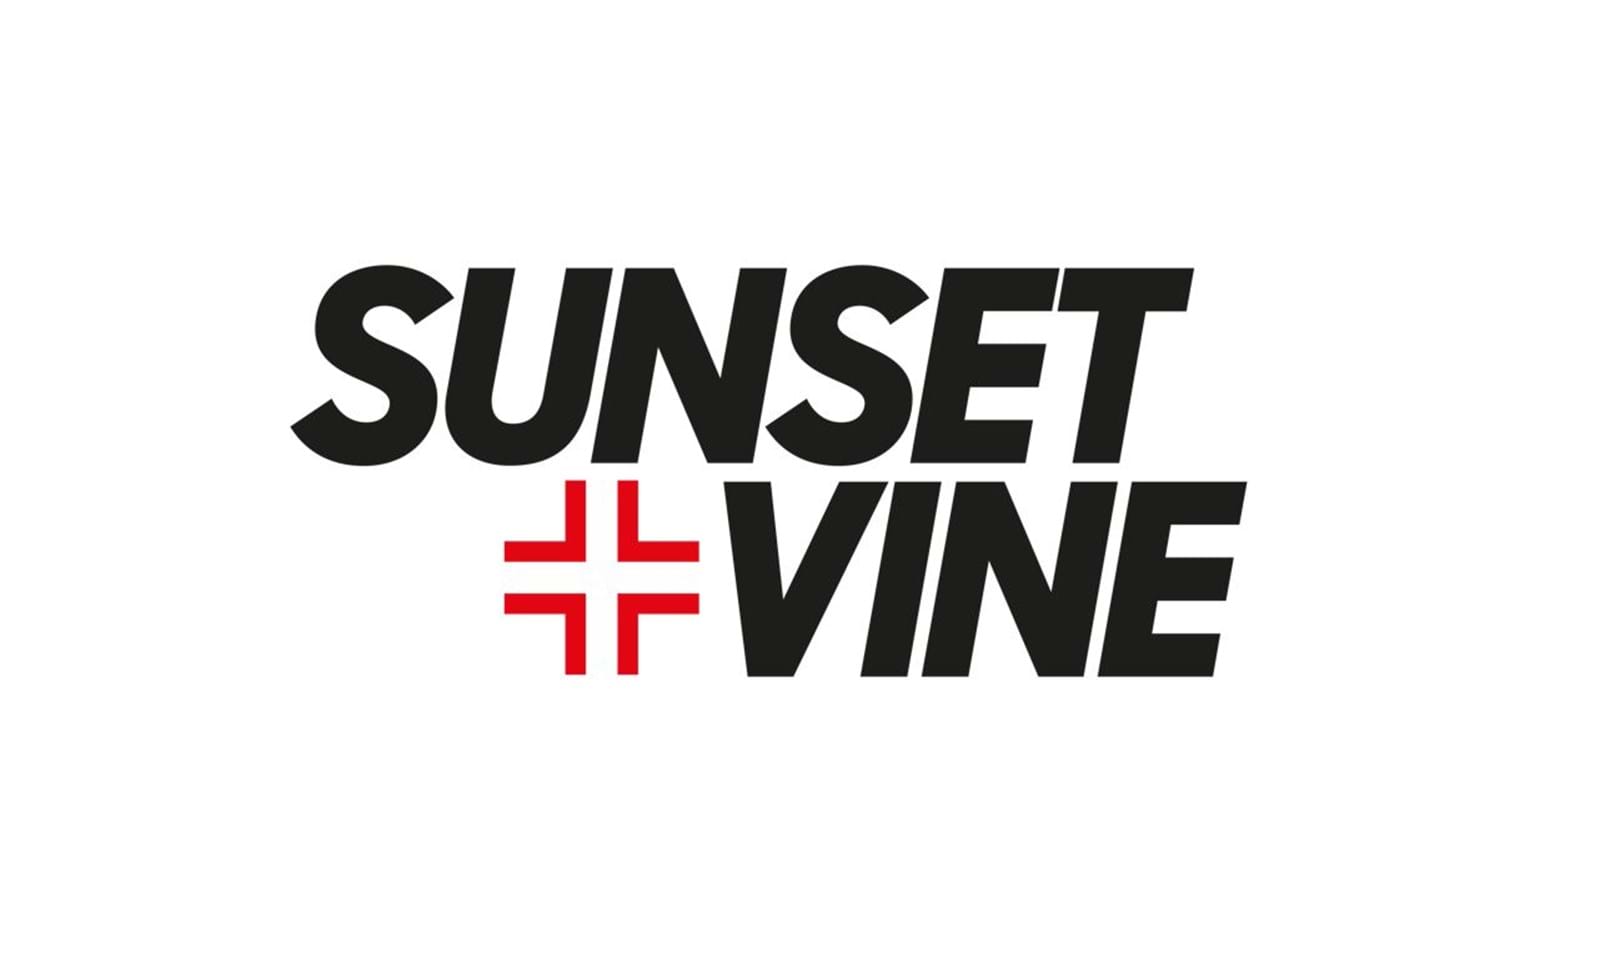 Sunset+Vine return to the DP World ILT20 as Host Broadcaster